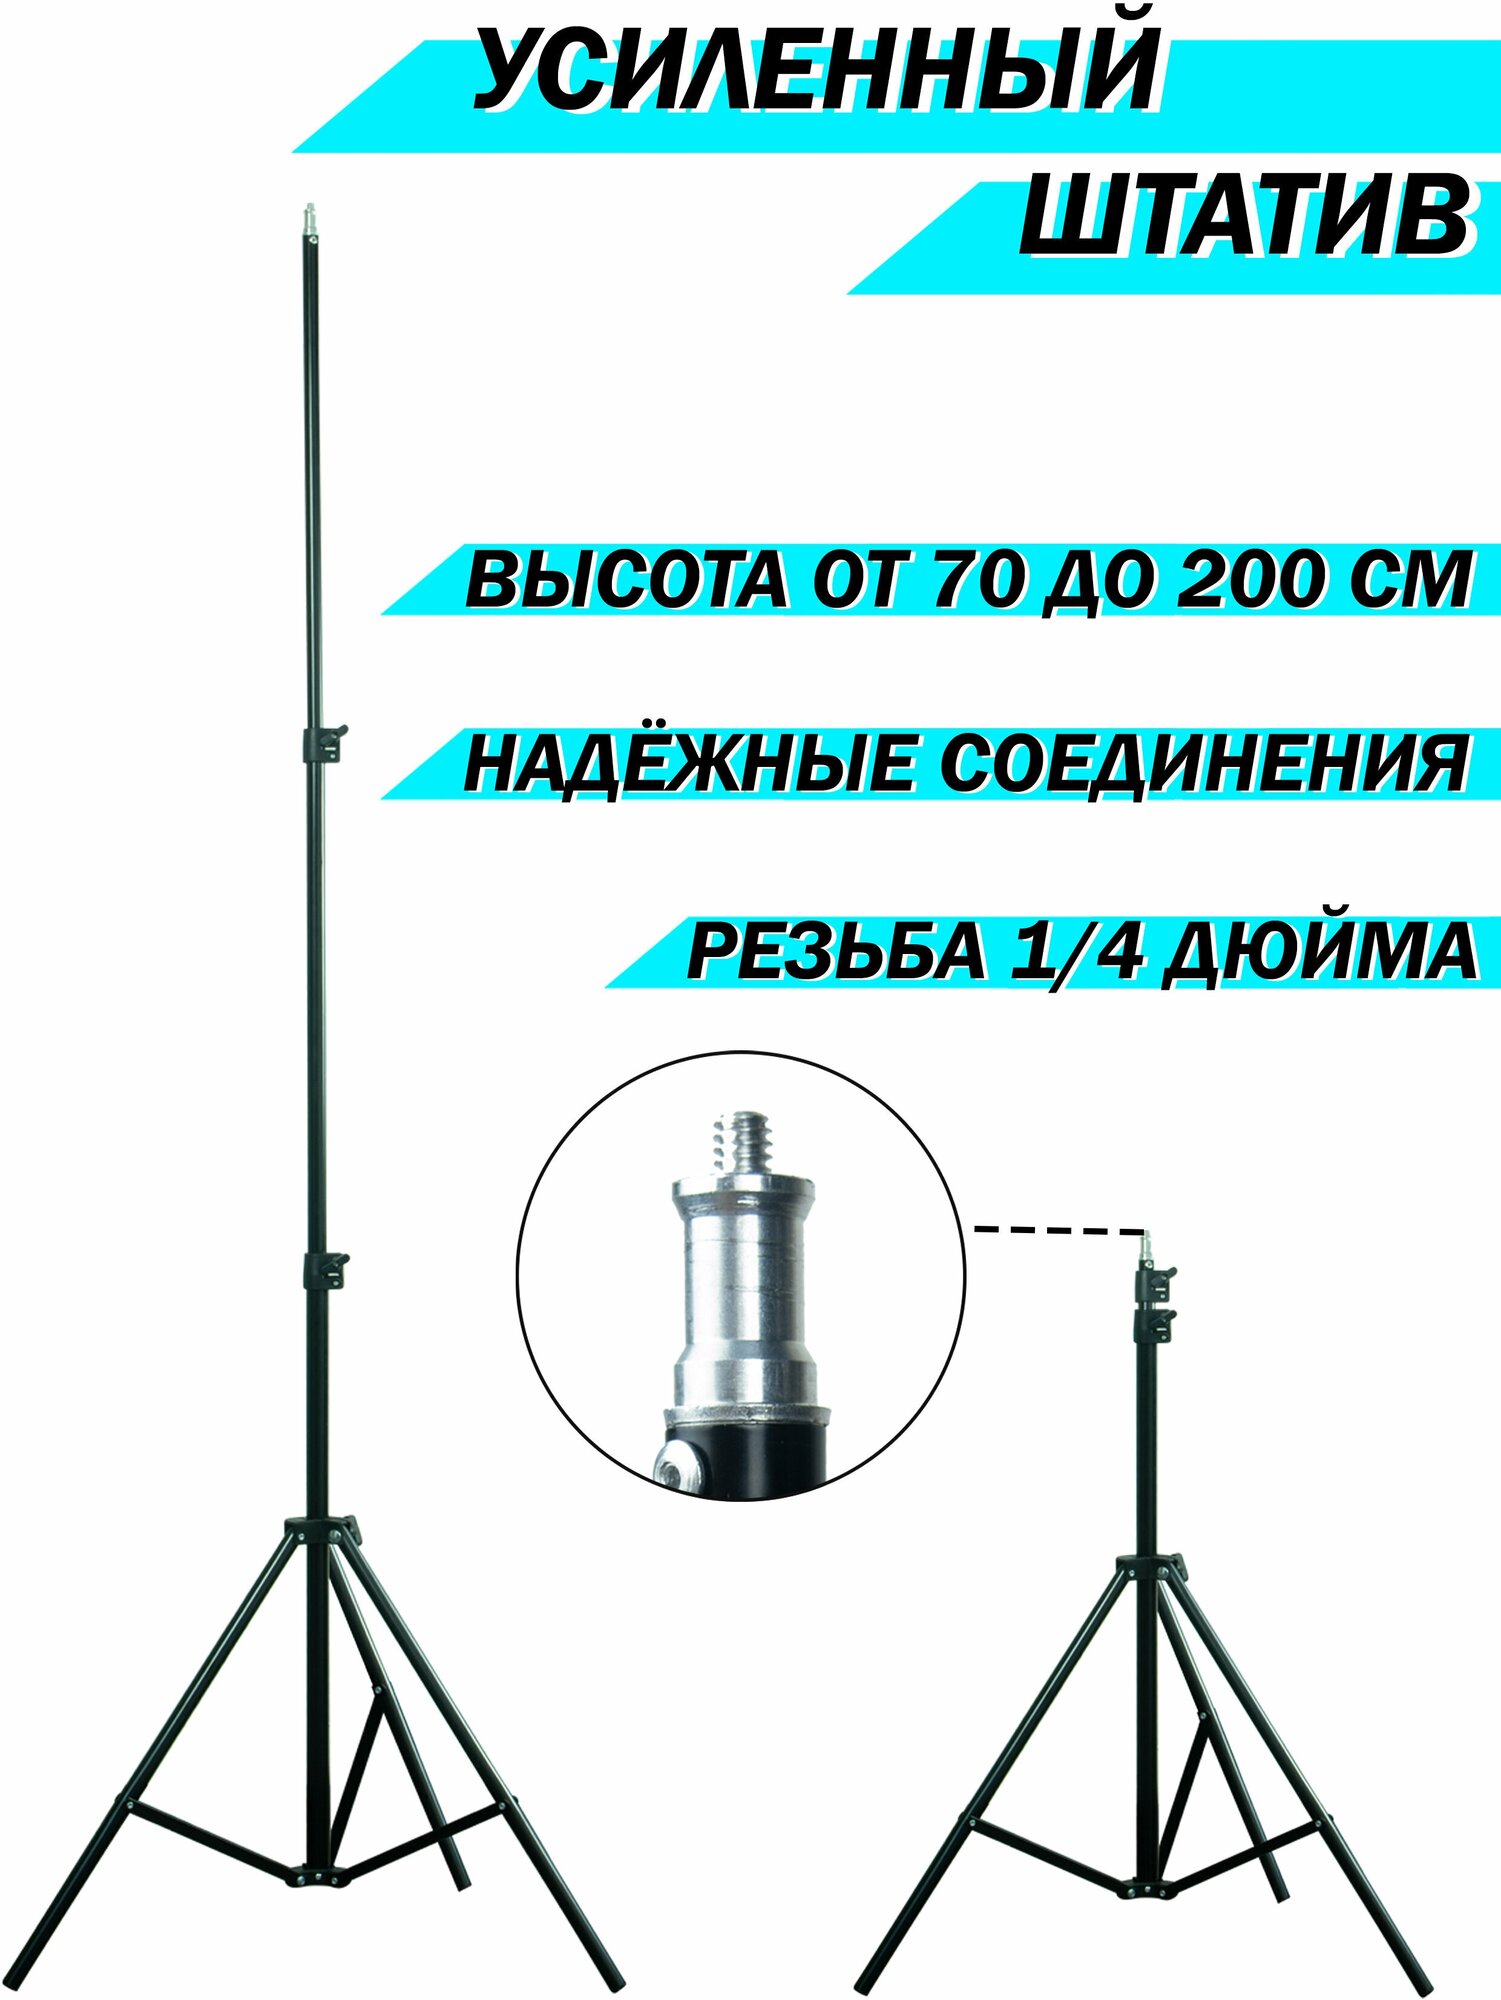 Универсальный штатив zKissfashion, штатив-трипод для кольцевой лампы, фотоаппарата, смартфона, 2,1 м